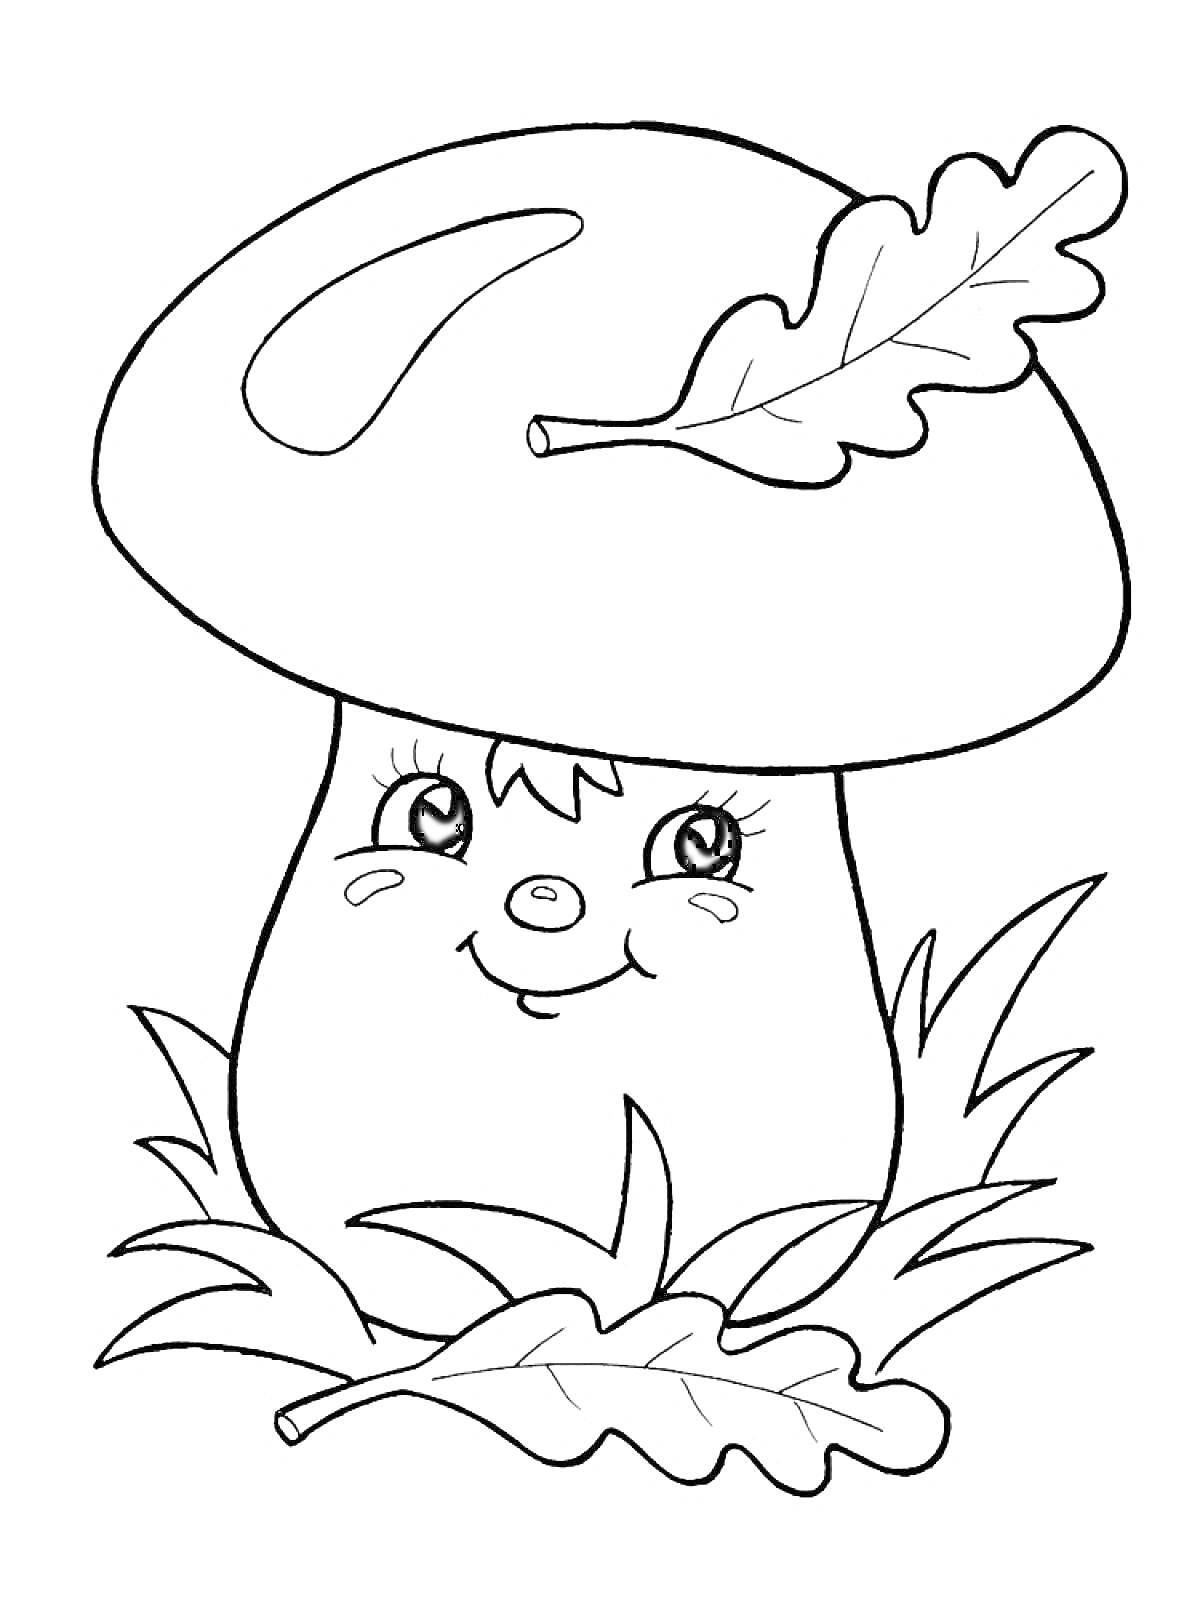 Раскраска Улыбающийся гриб с листочком на шляпке и травой